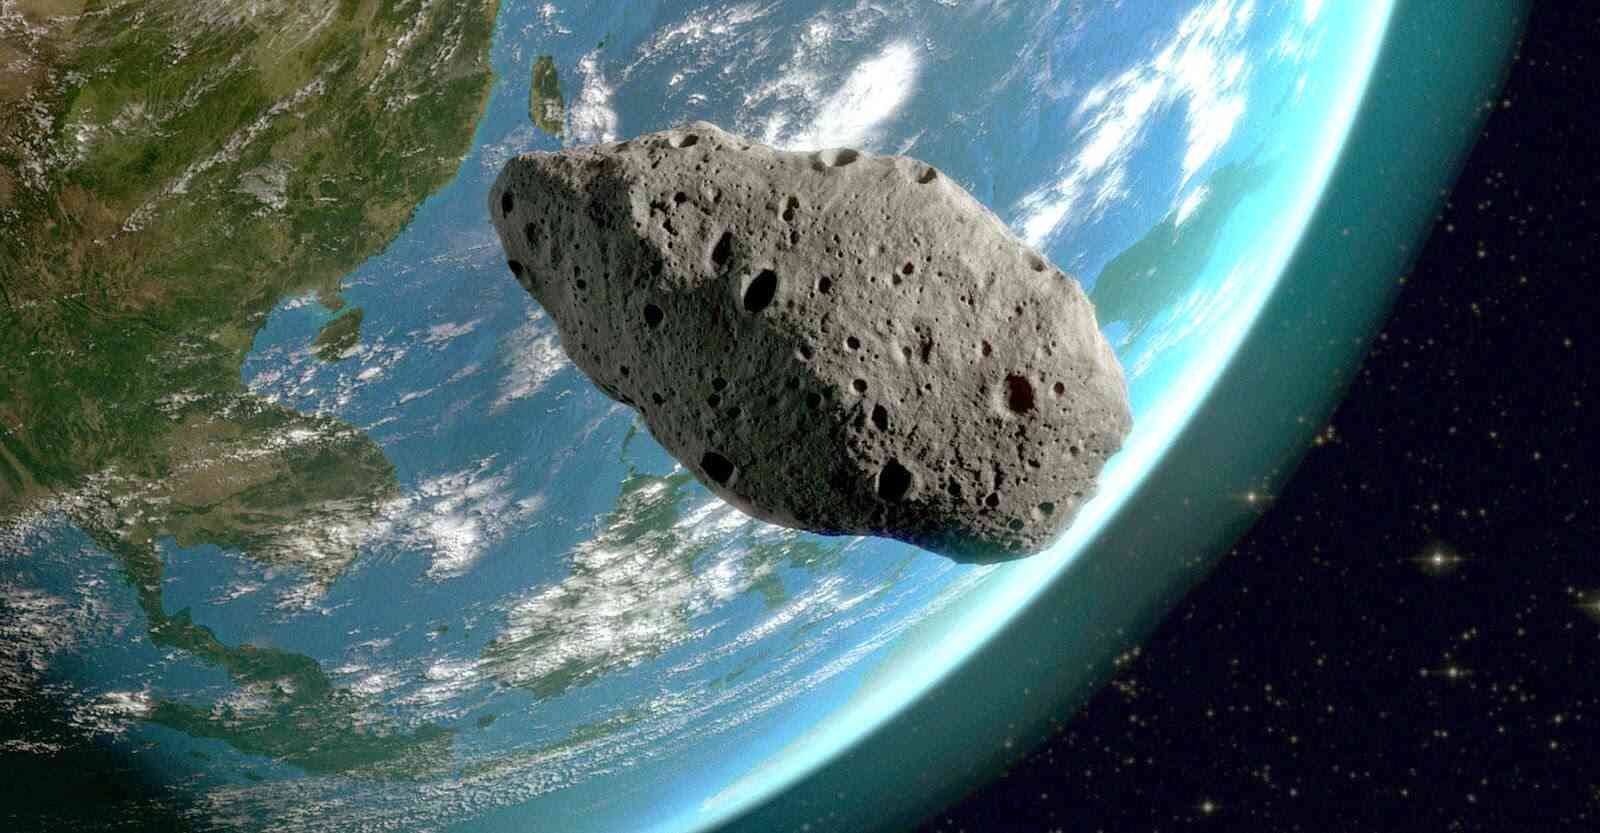 Yerə nəhəng asteroid yaxınlaşır -  1 iyunda nə baş verəcək?